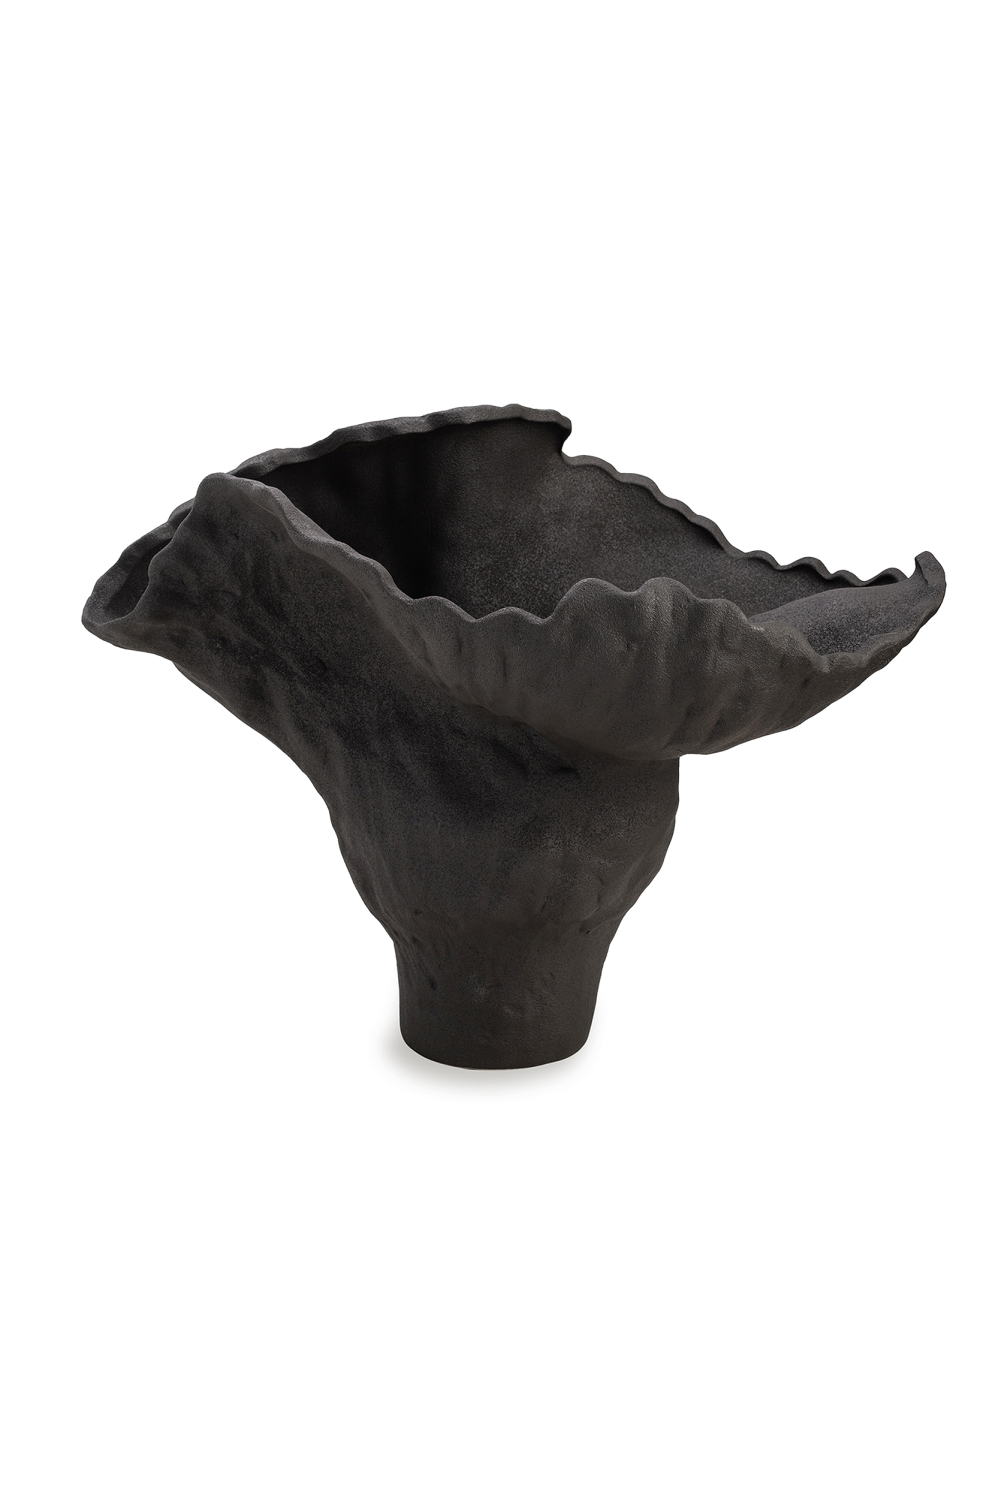 Black Ceramic Vase | Liang & Eimil Arvasia | Oroa.com